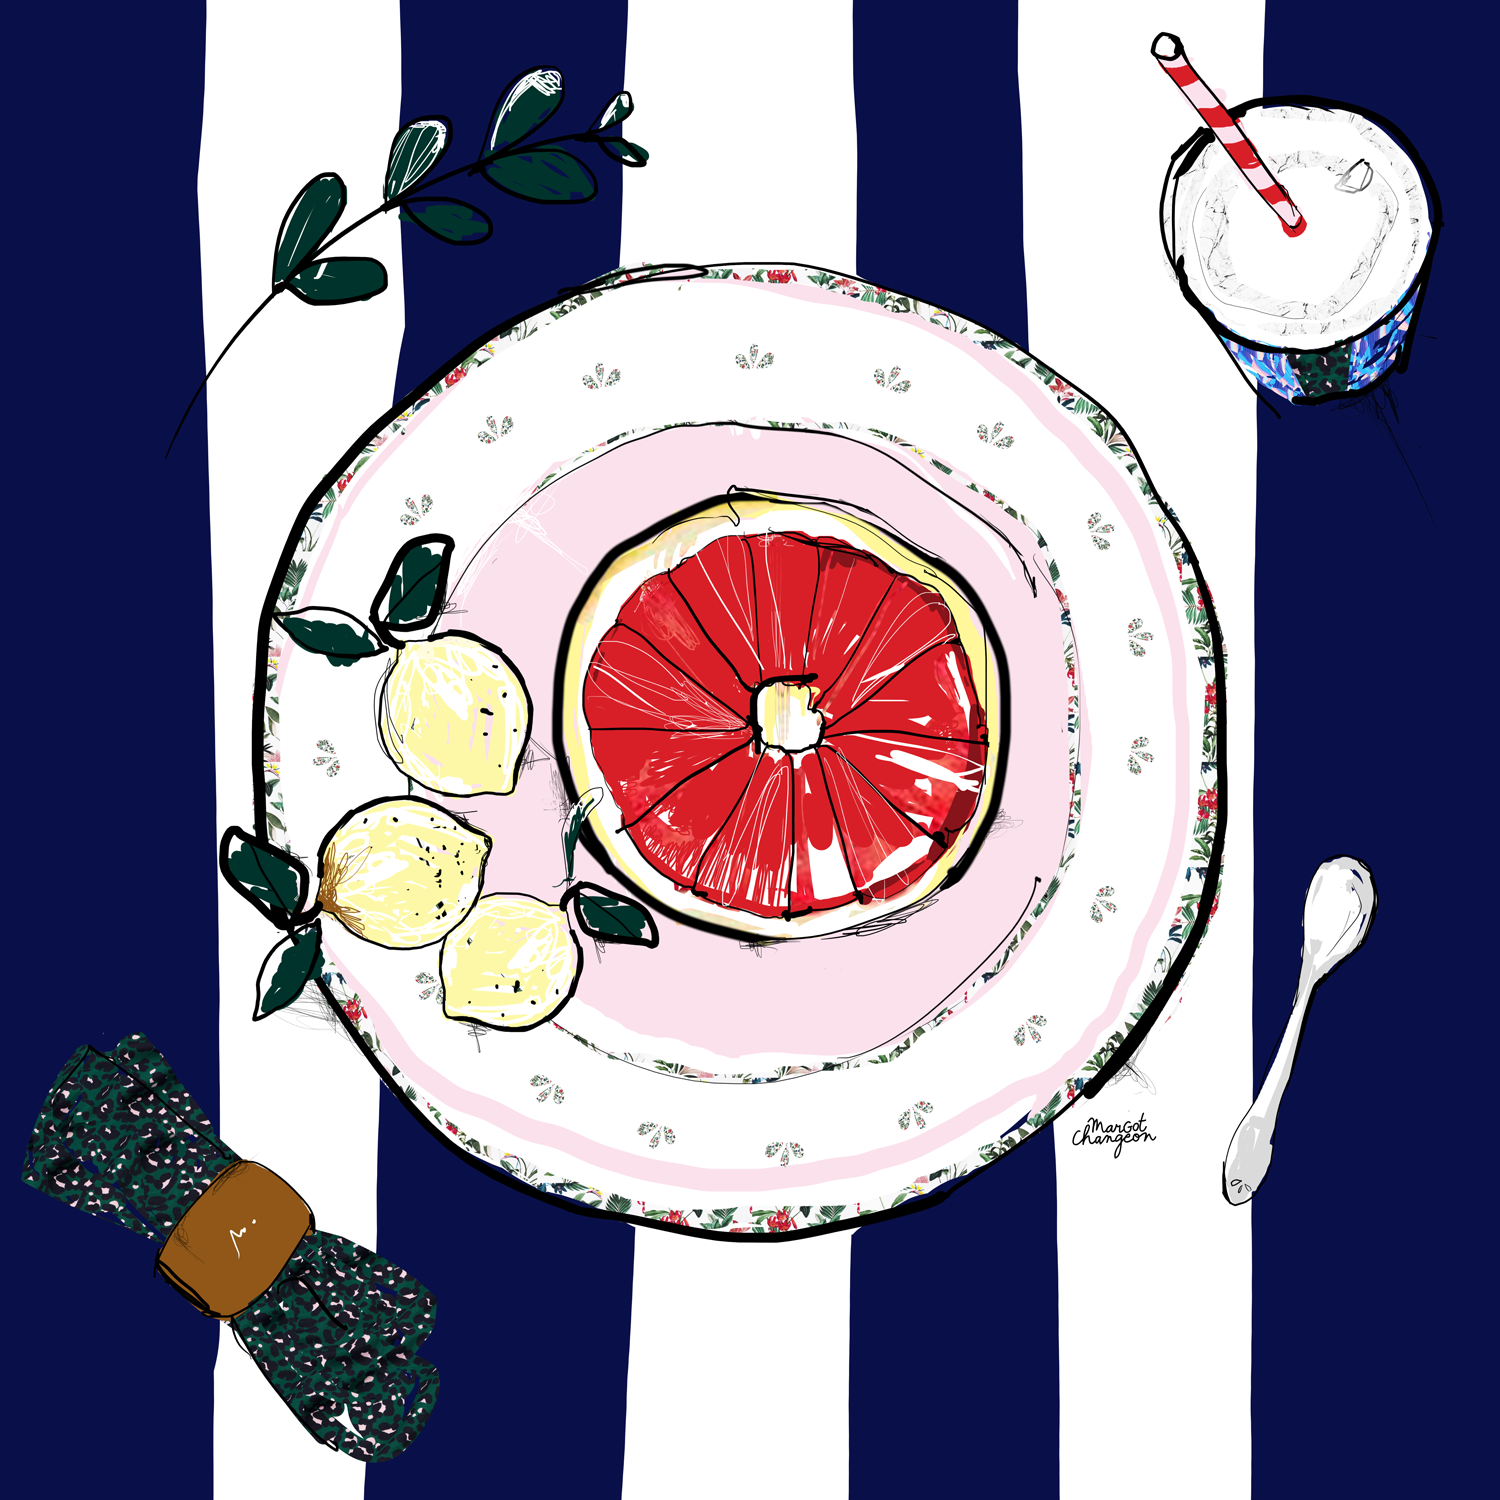 Illustration assiette gastronomie pamplemousse par Margot Changeon.